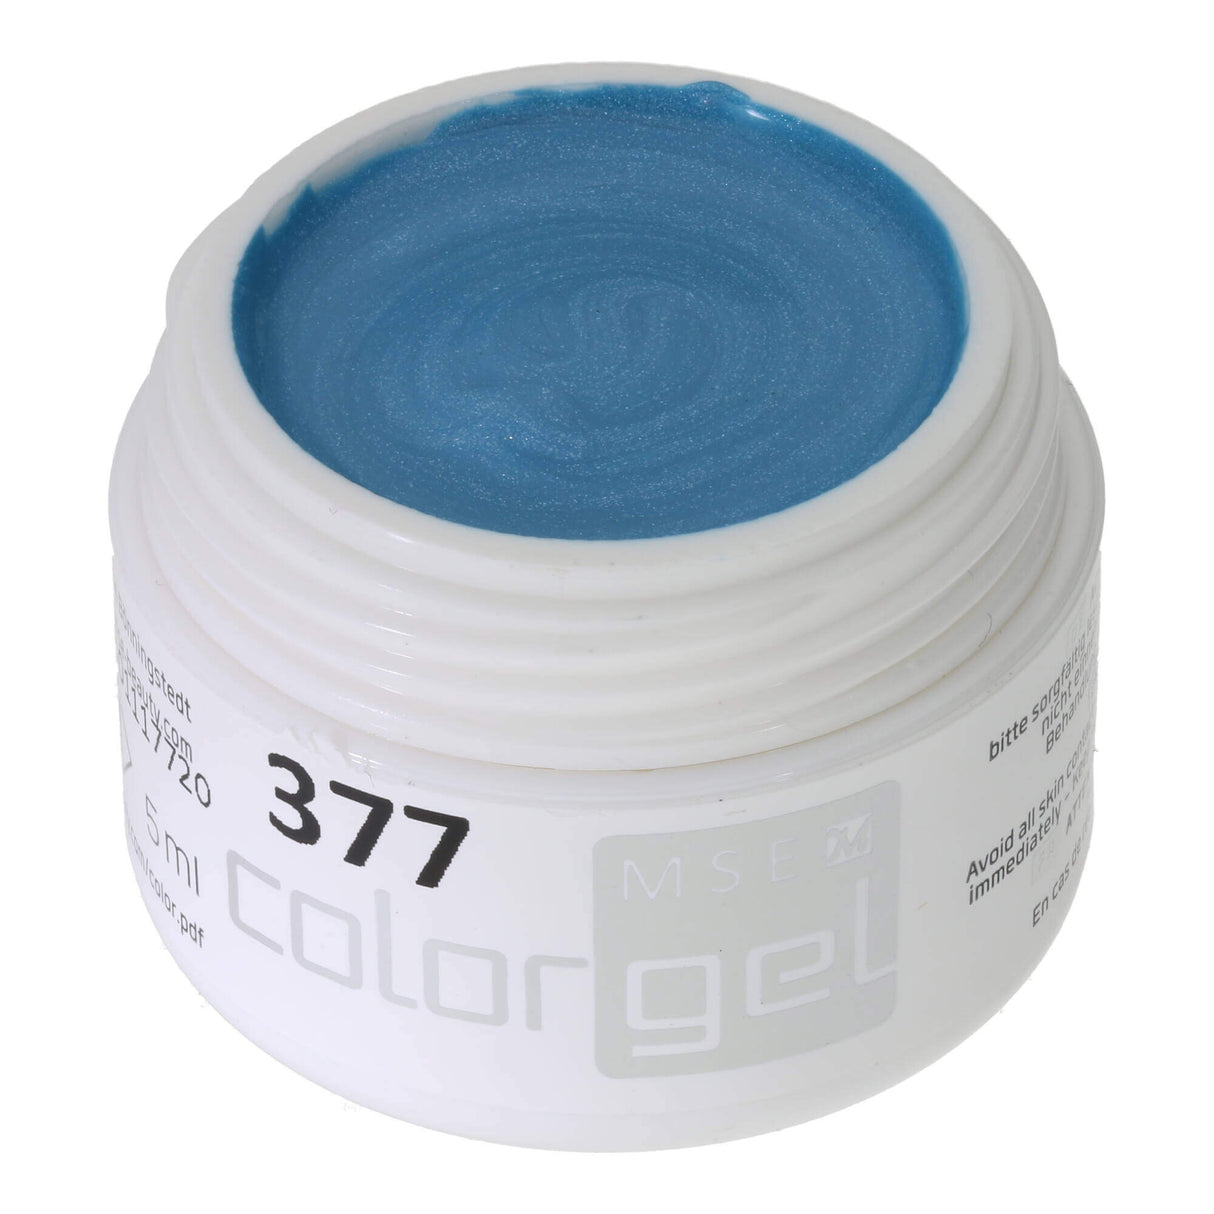 # 377 Premium-EFFEKT Color Gel 5ml Medium bag with a subtle shimmer